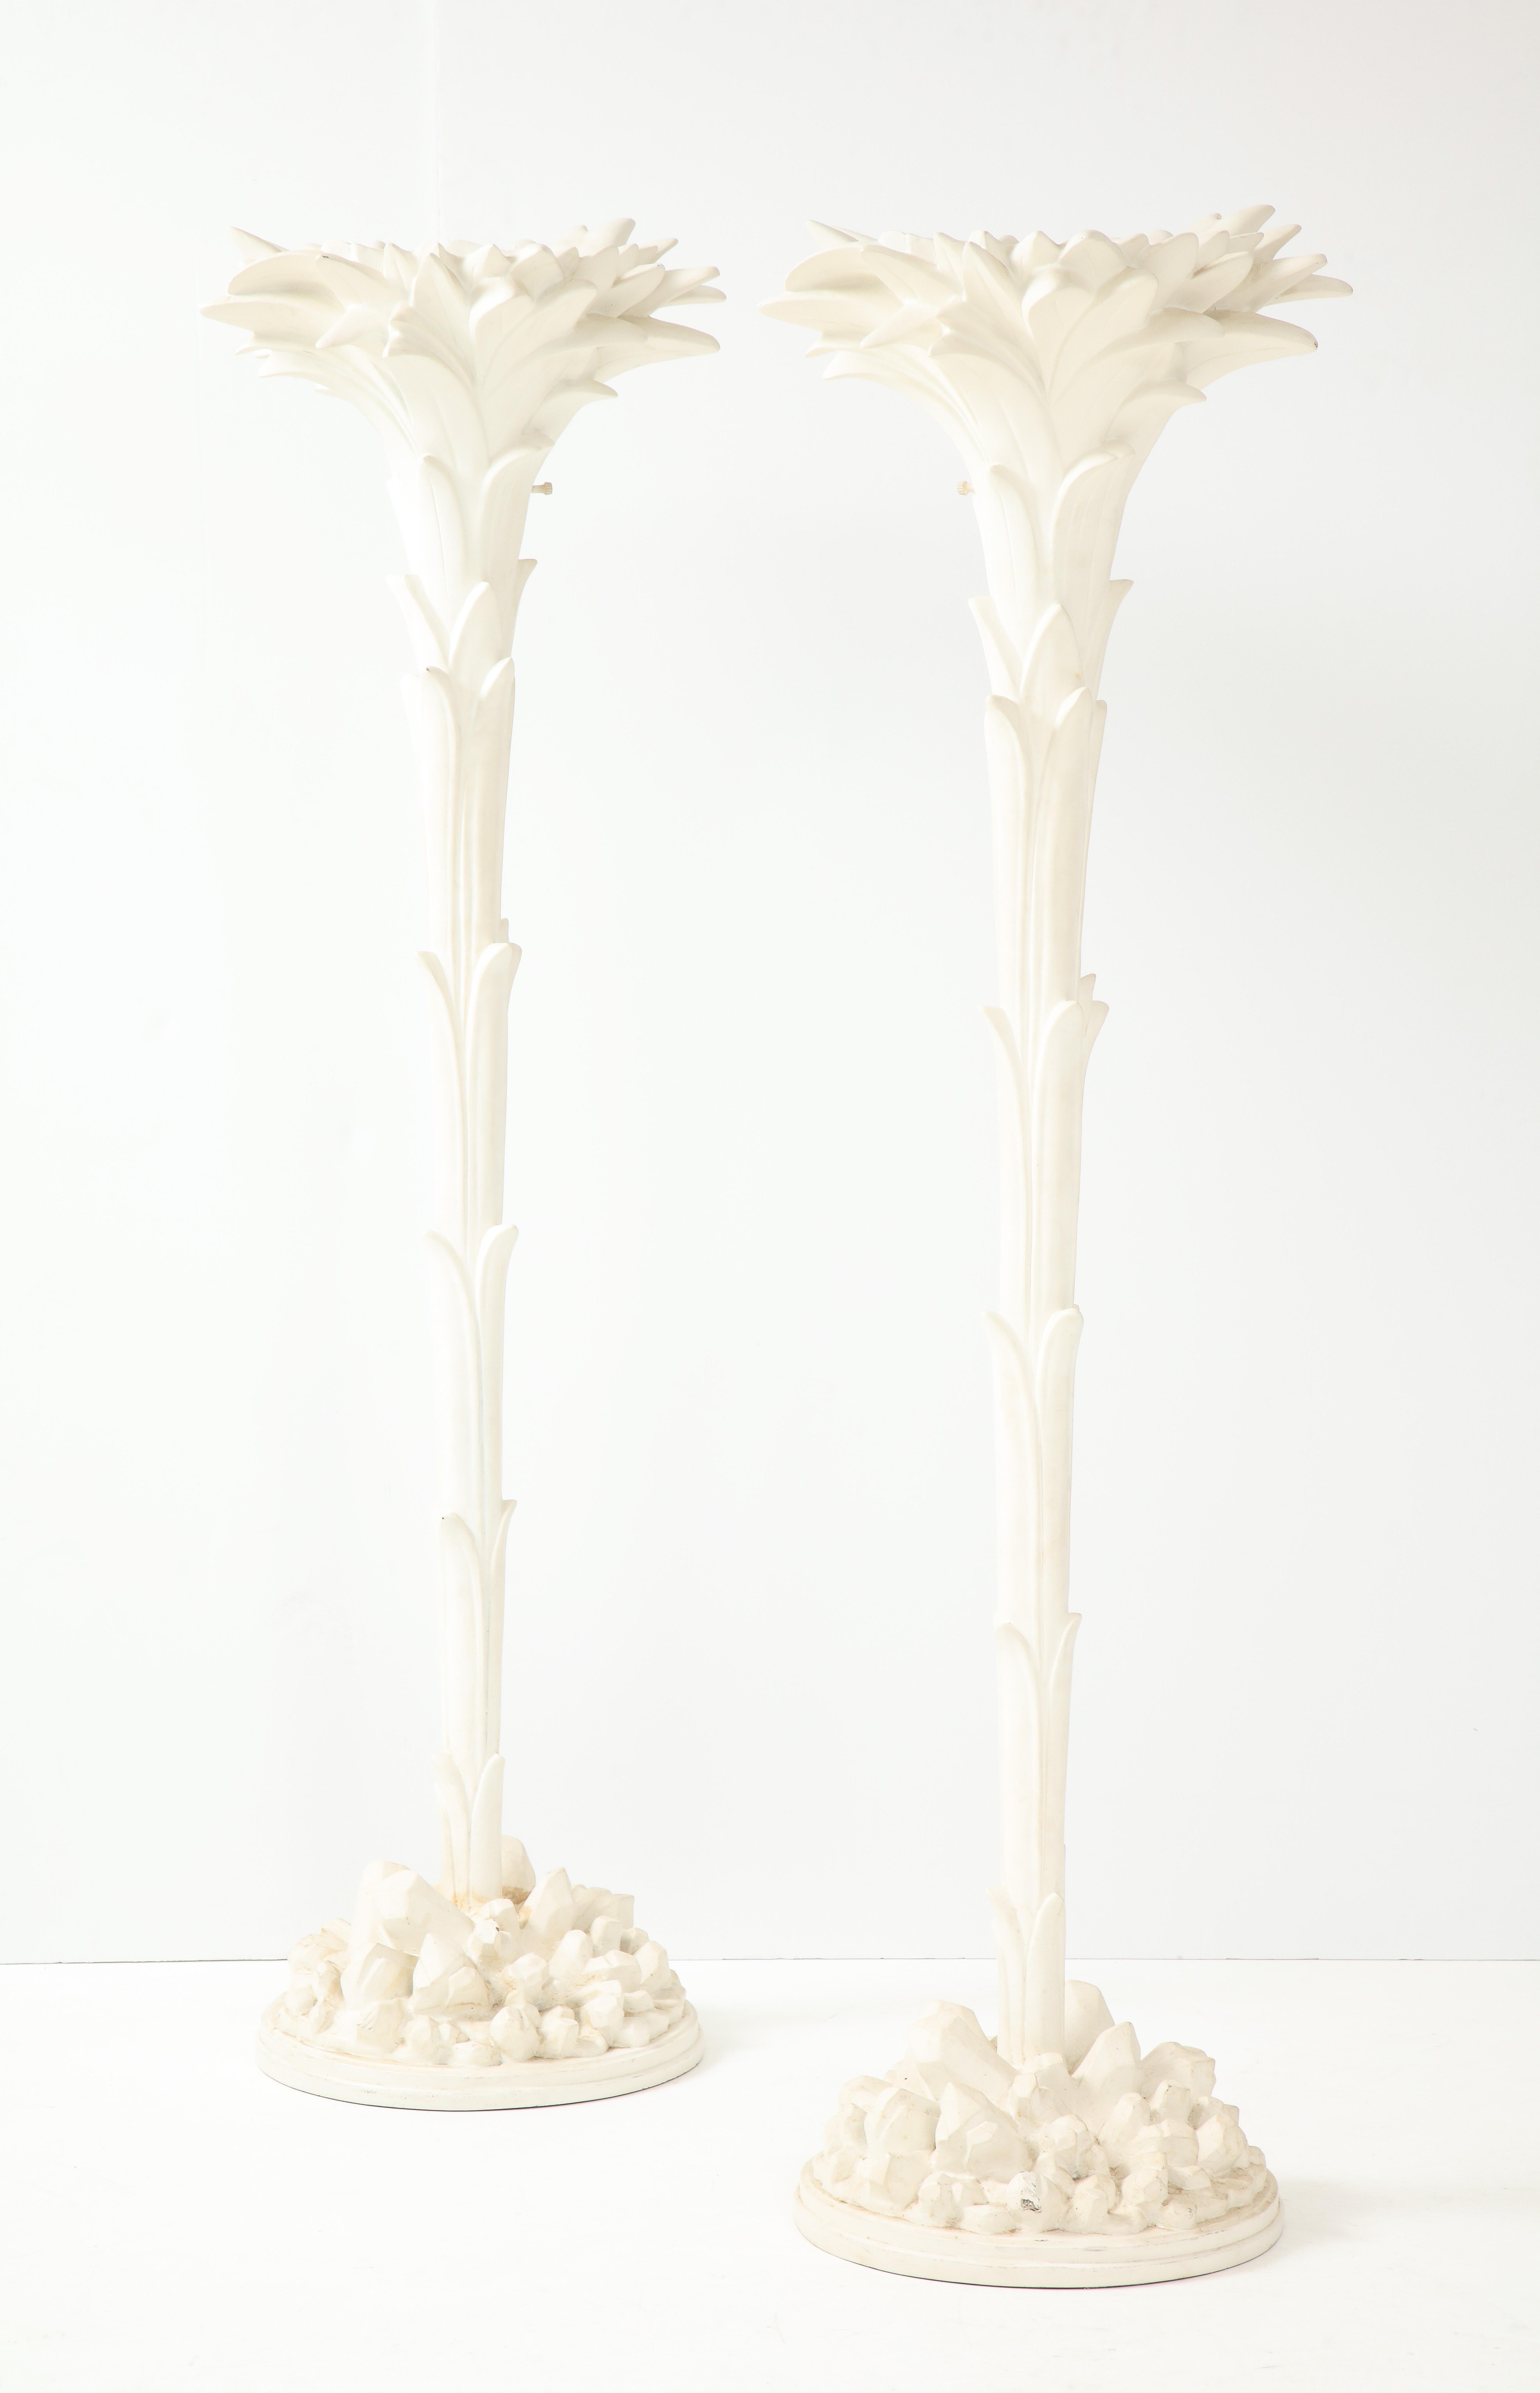 Ein Paar weiß lackierte Fackeln aus Glasfaser in der Art von Serge Roche.

   